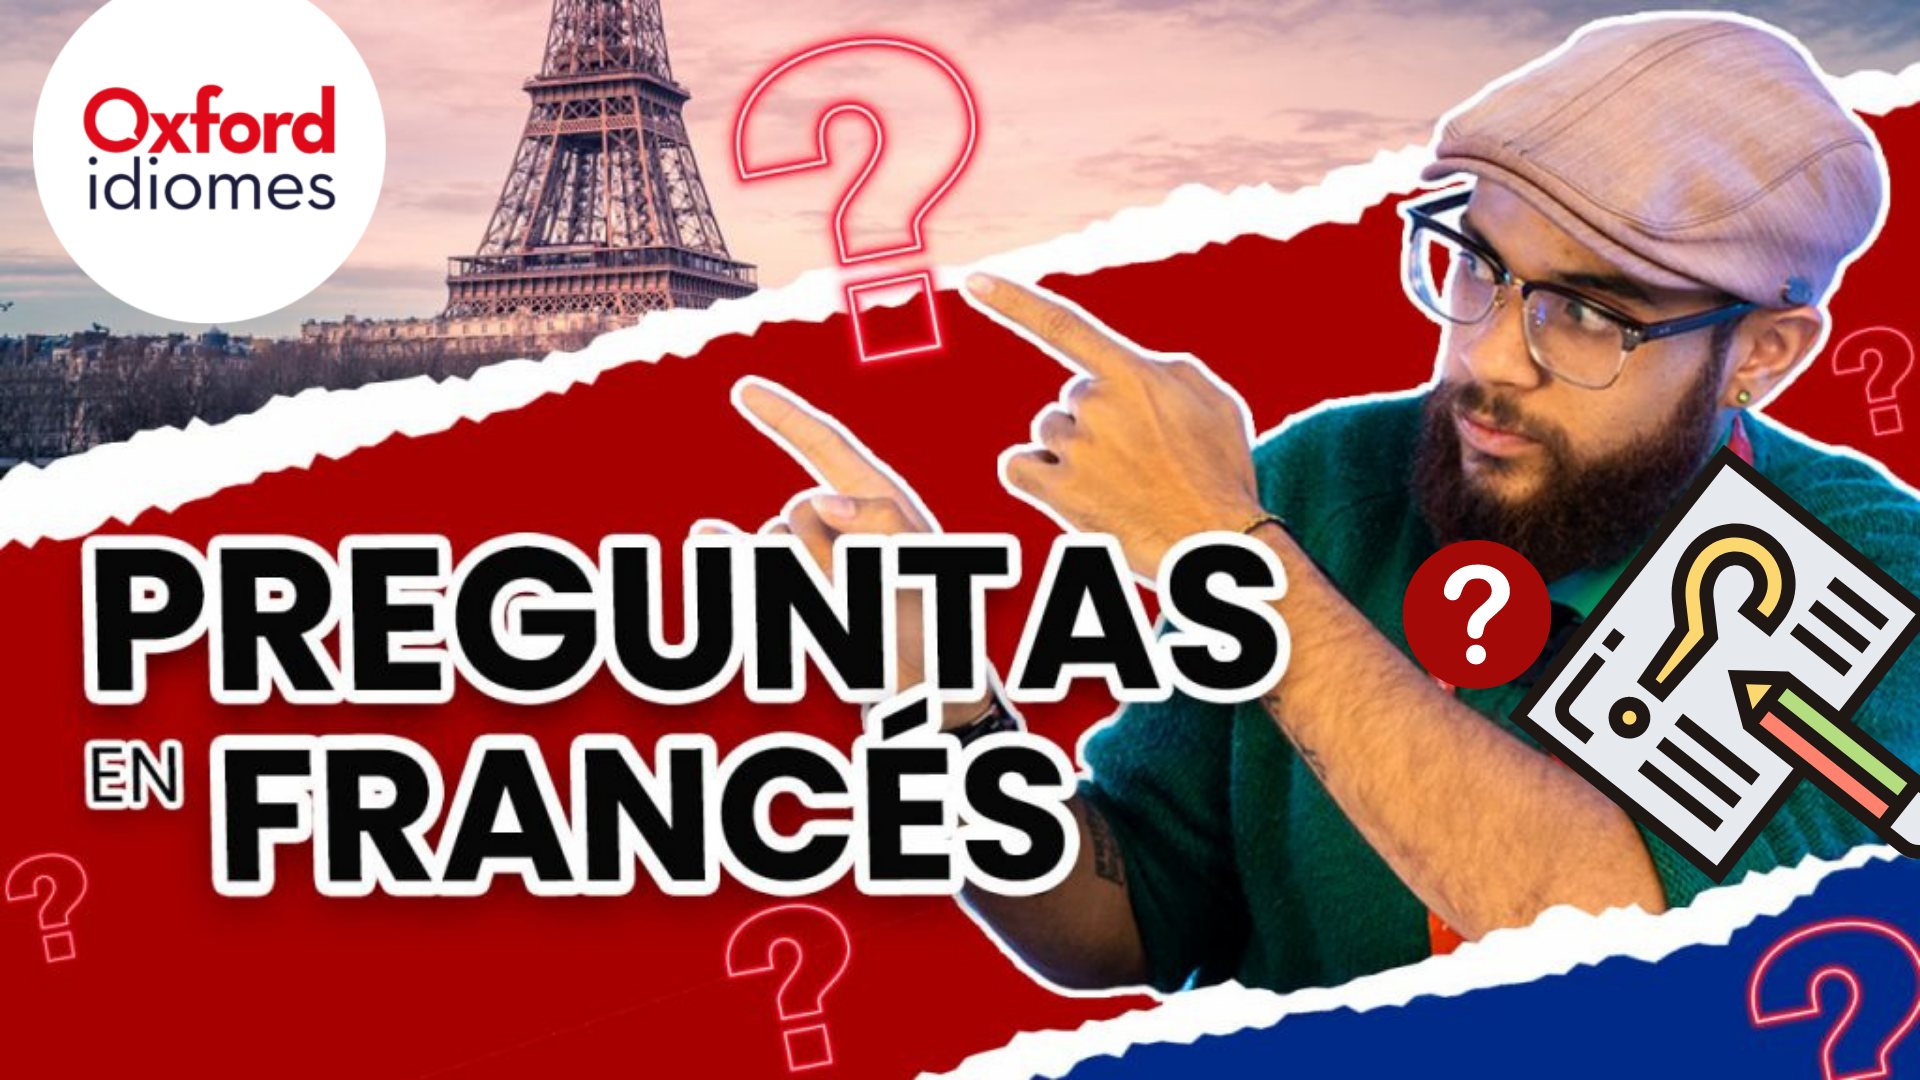 Preguntas en Frances